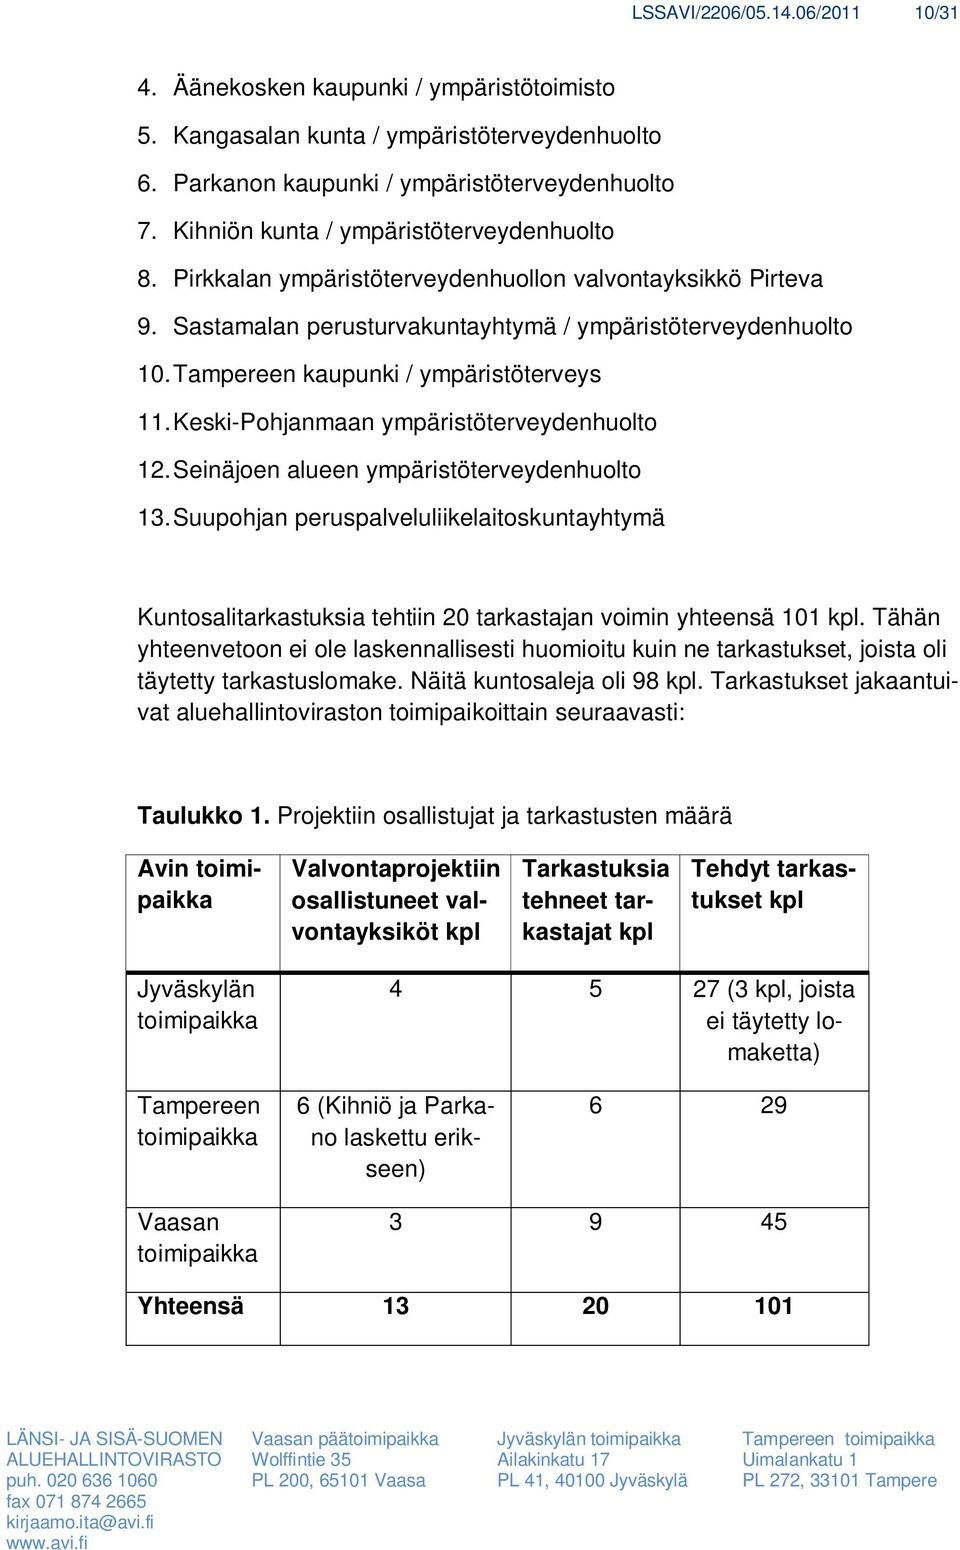 Tampereen kaupunki / ympäristöterveys 11. Keski-Pohjanmaan ympäristöterveydenhuolto 12. Seinäjoen alueen ympäristöterveydenhuolto 13.